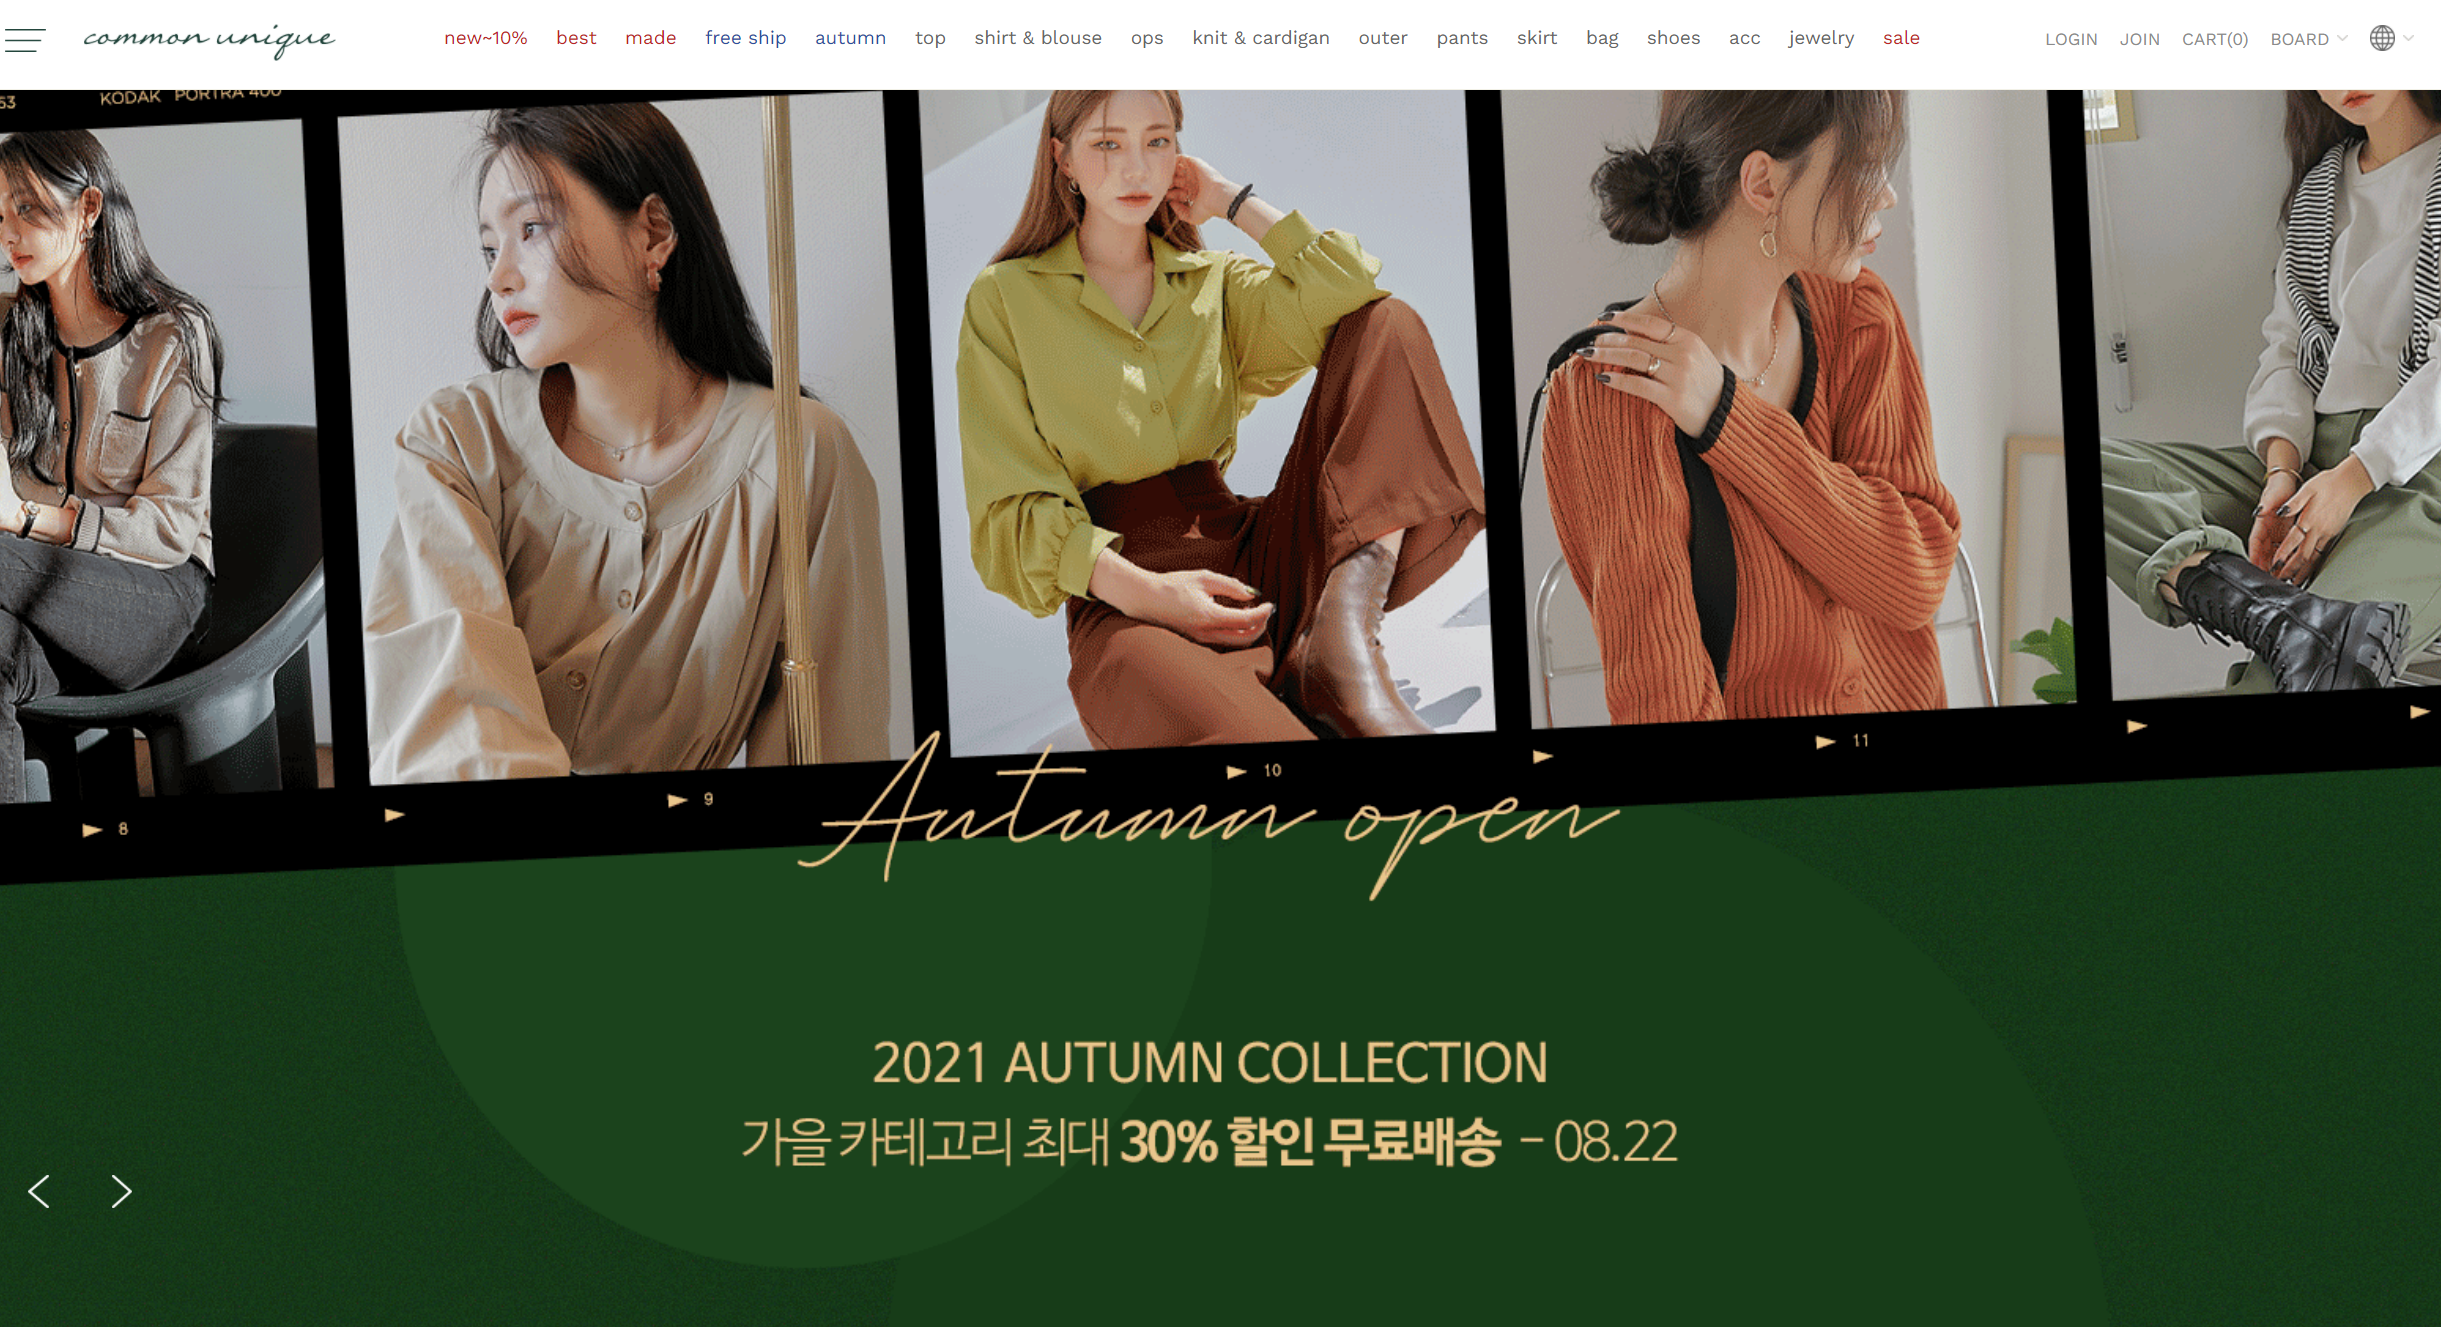 korea shopping service - common unique